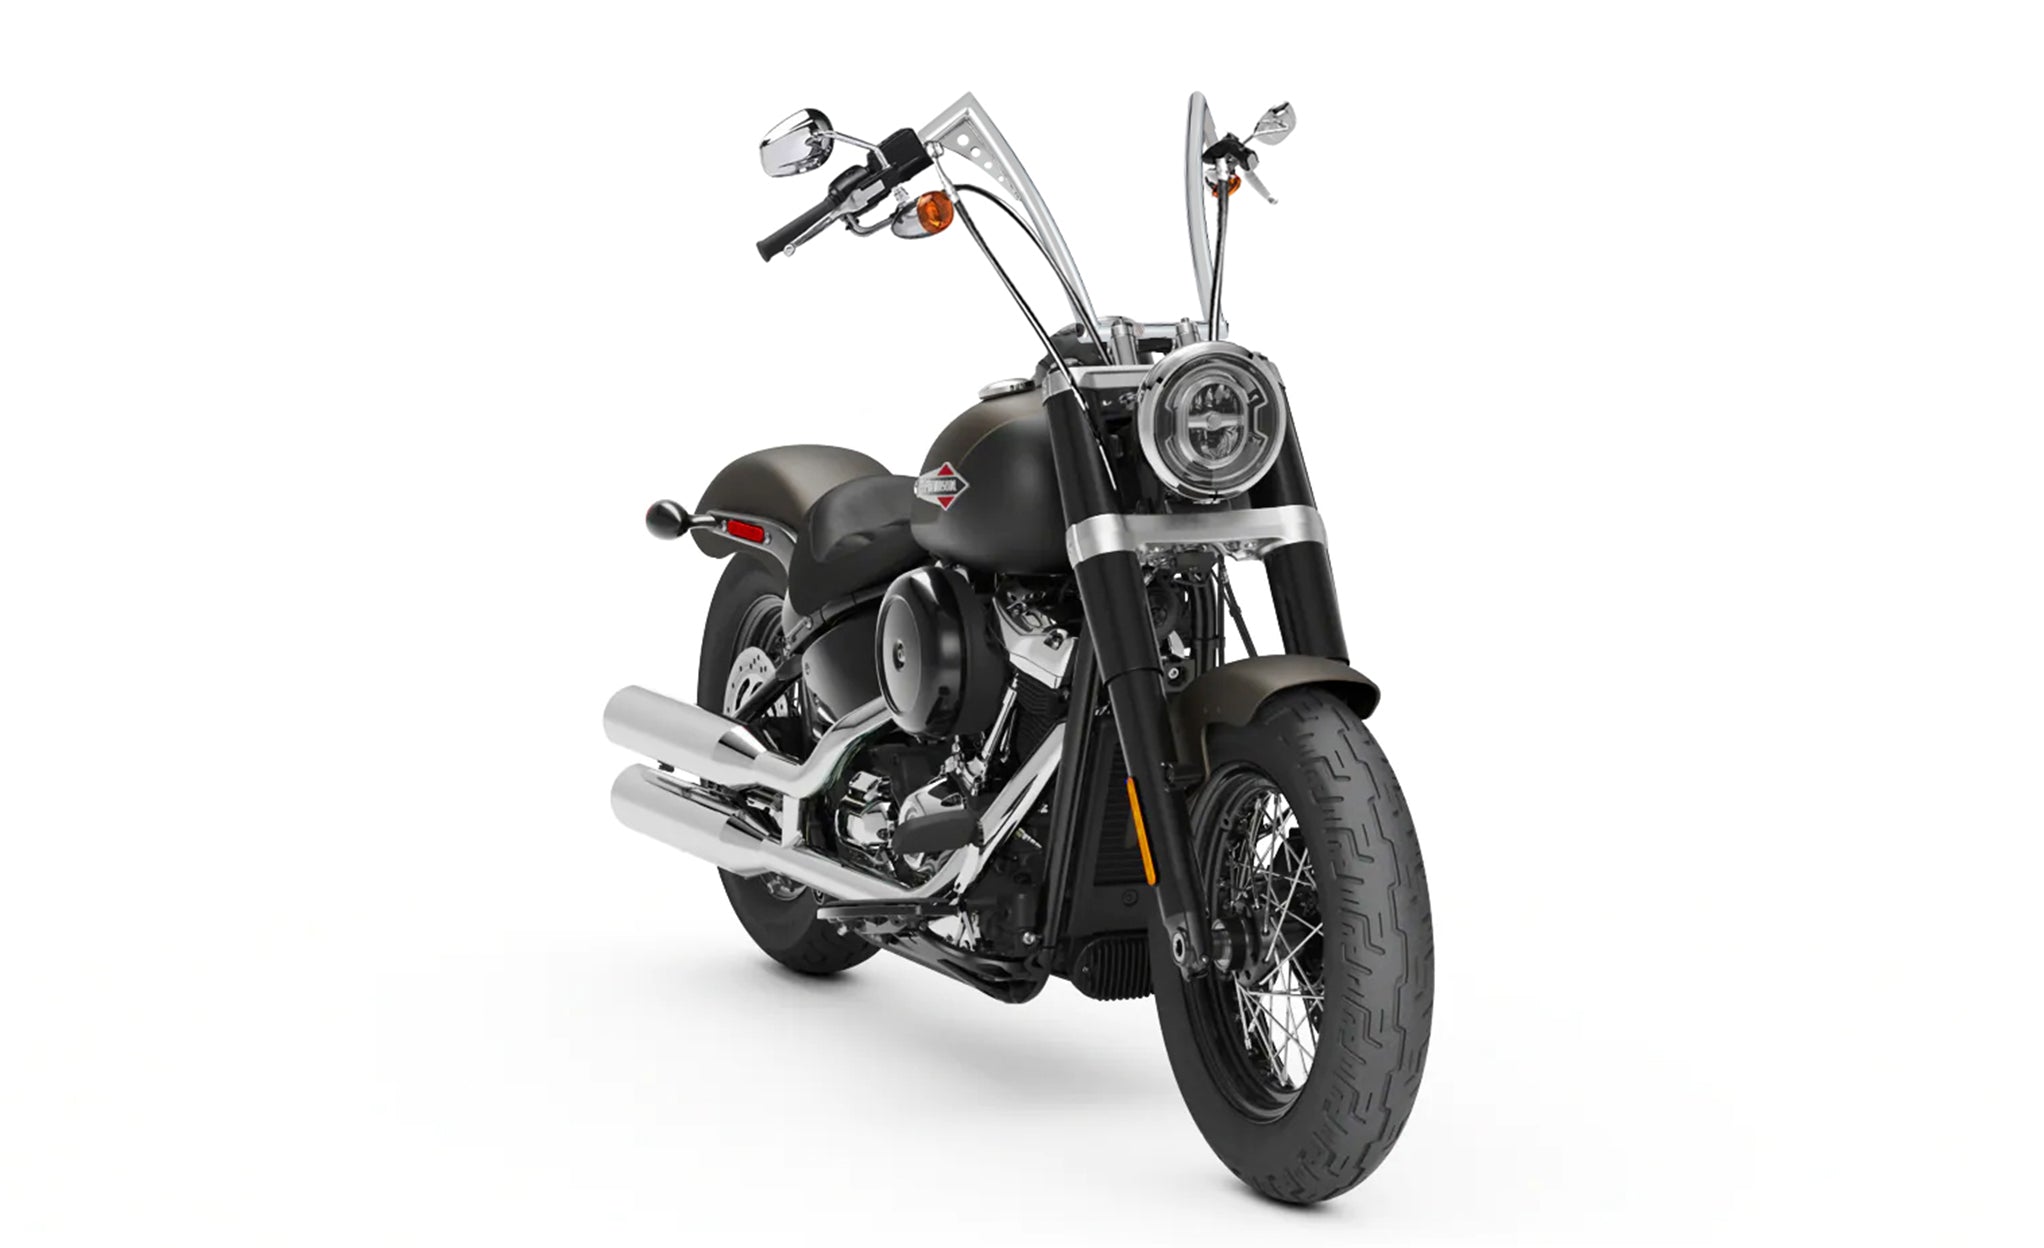 Viking Iron Born 12" Handlebar For Harley Softail Slim FLS Chrome Bag on Bike View @expand